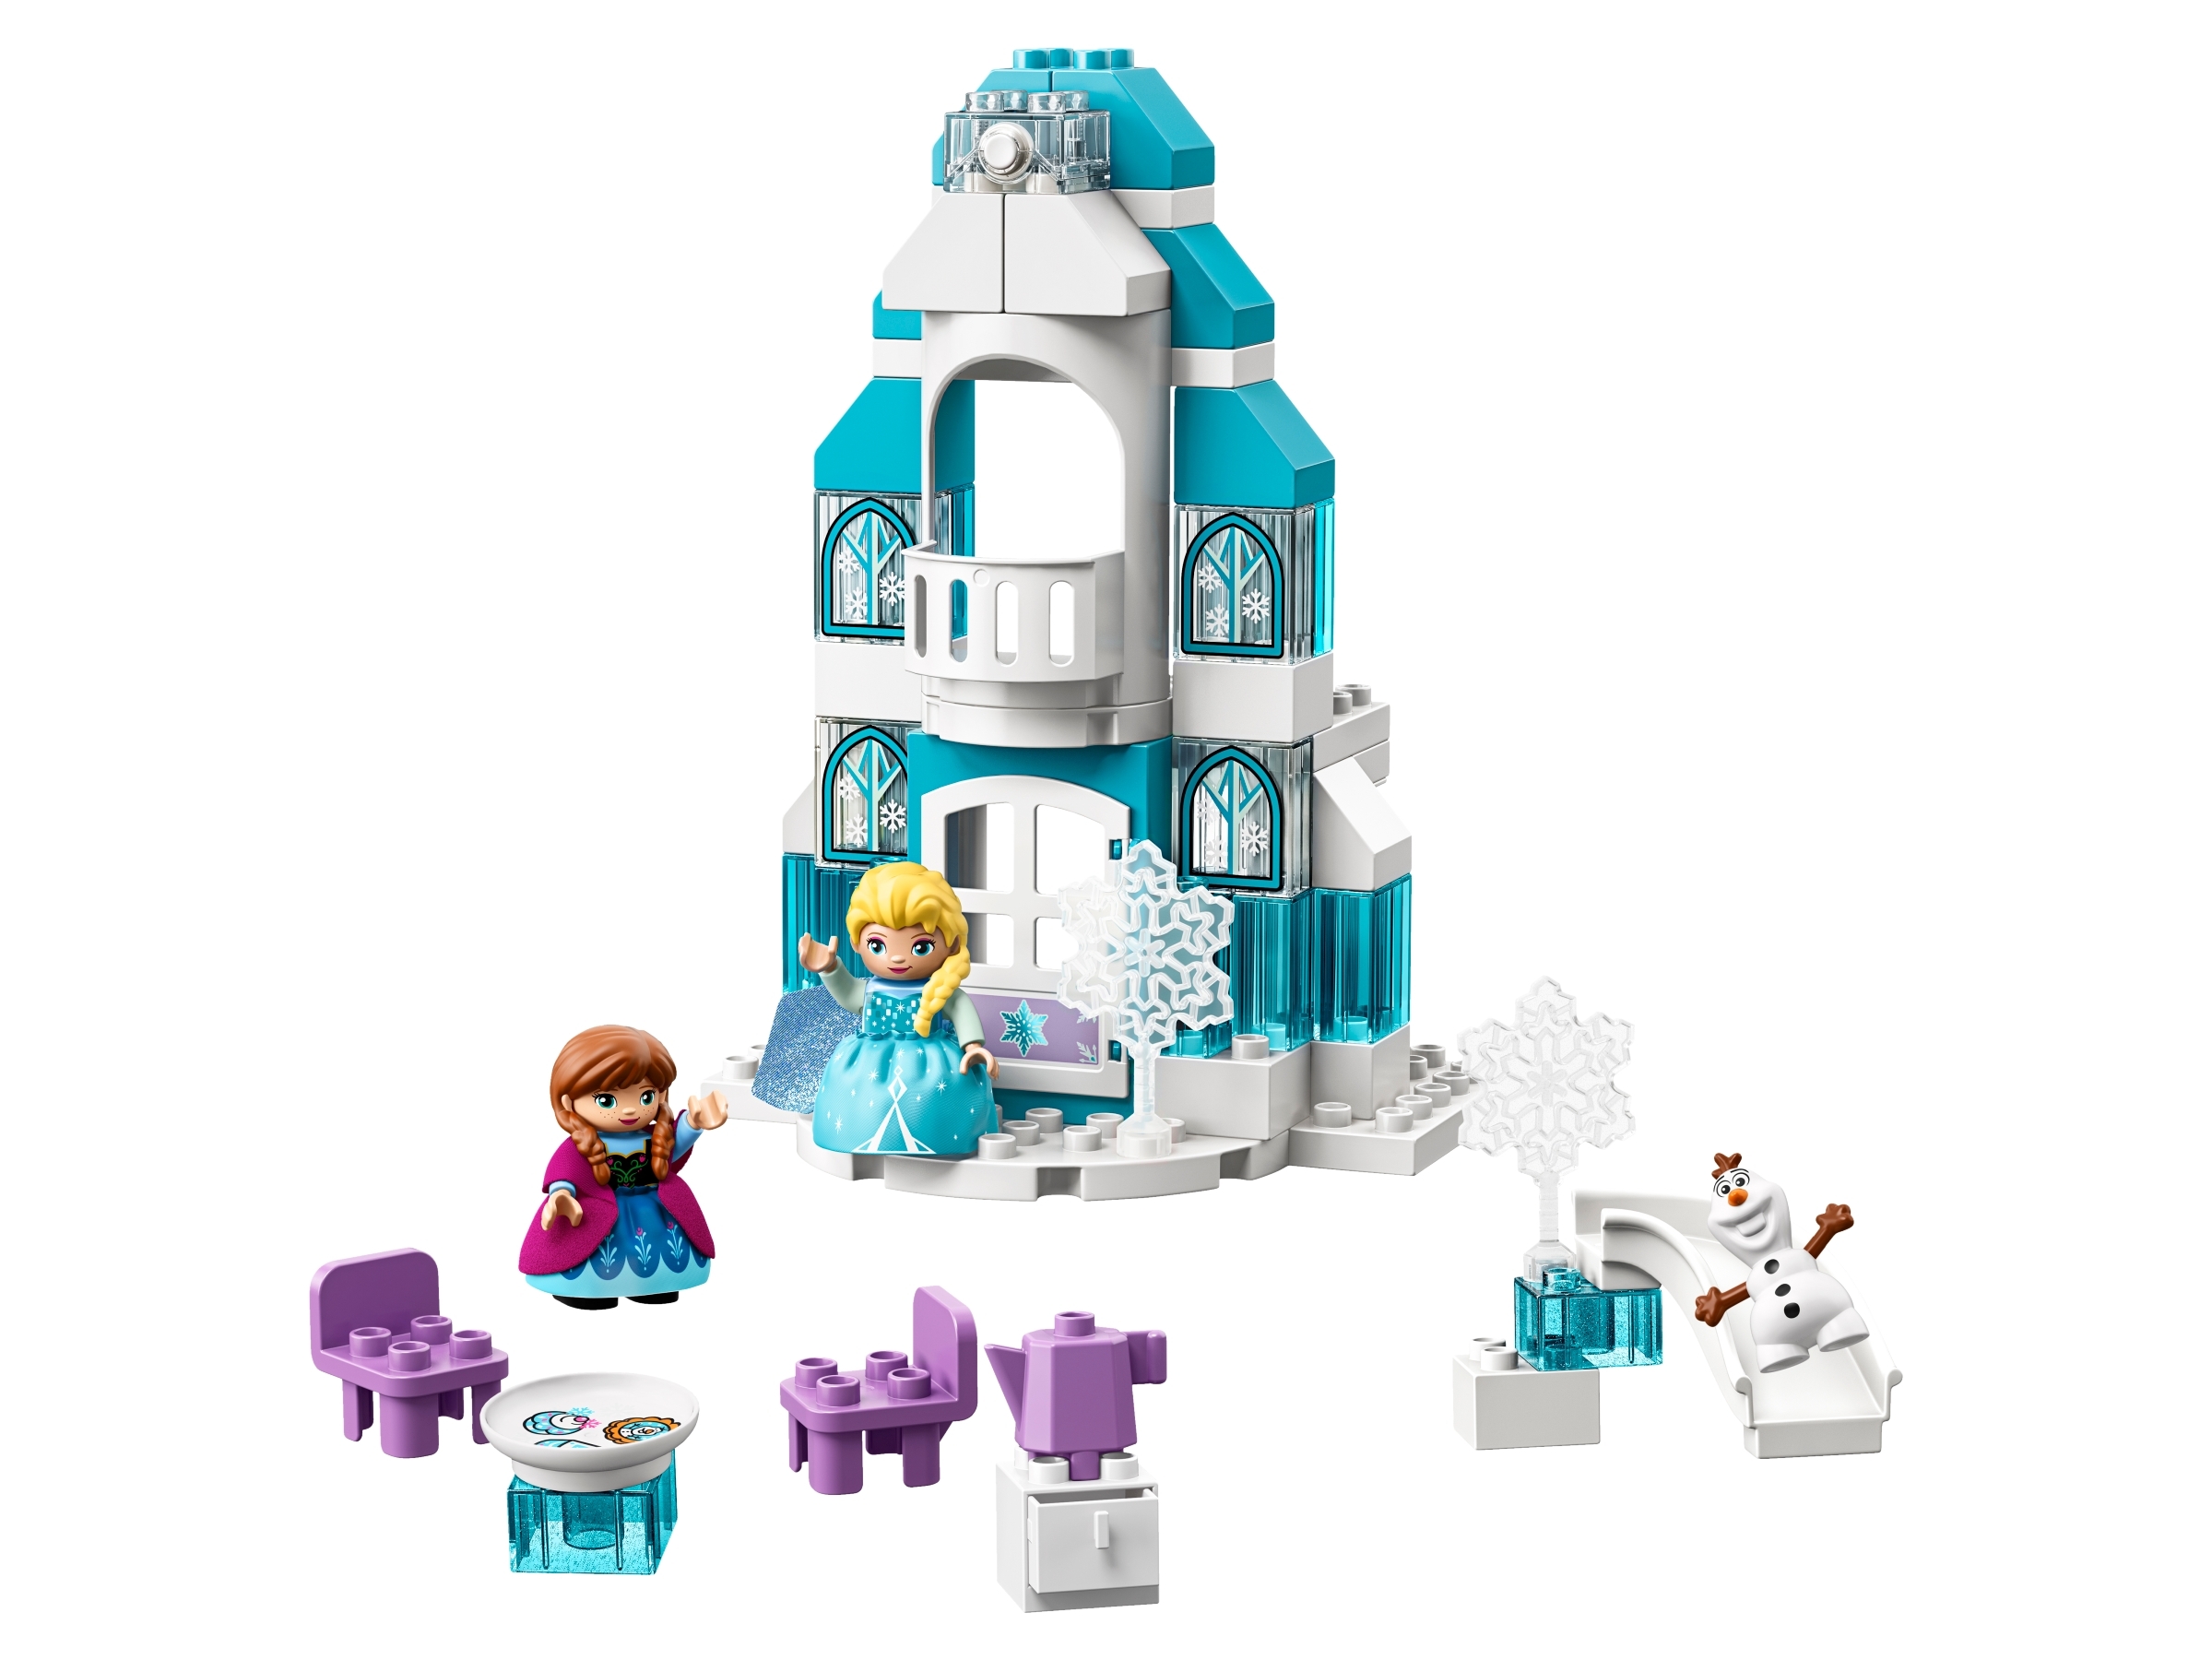 lego duplo frozen castle